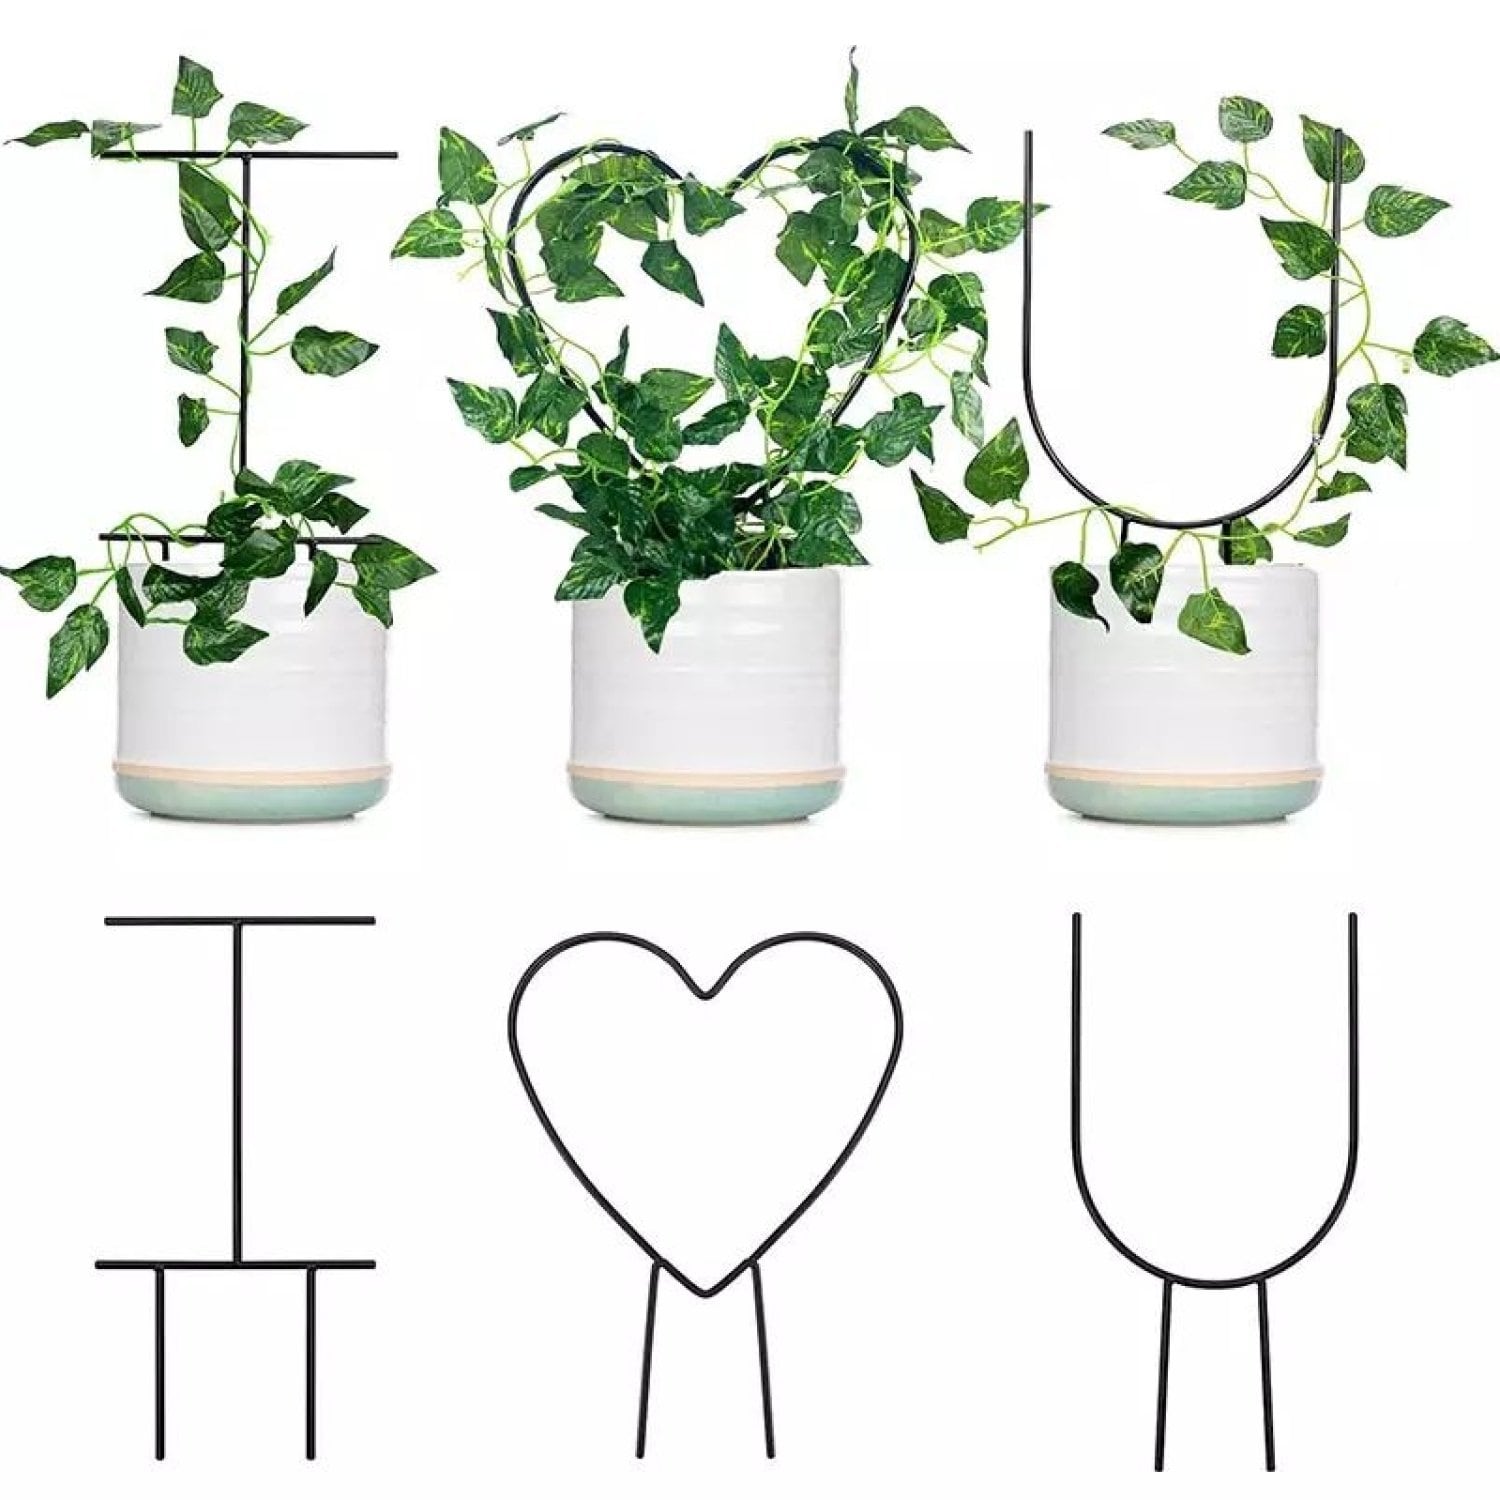 фото Металлическая подставка агро мадана для растений i love you 114260